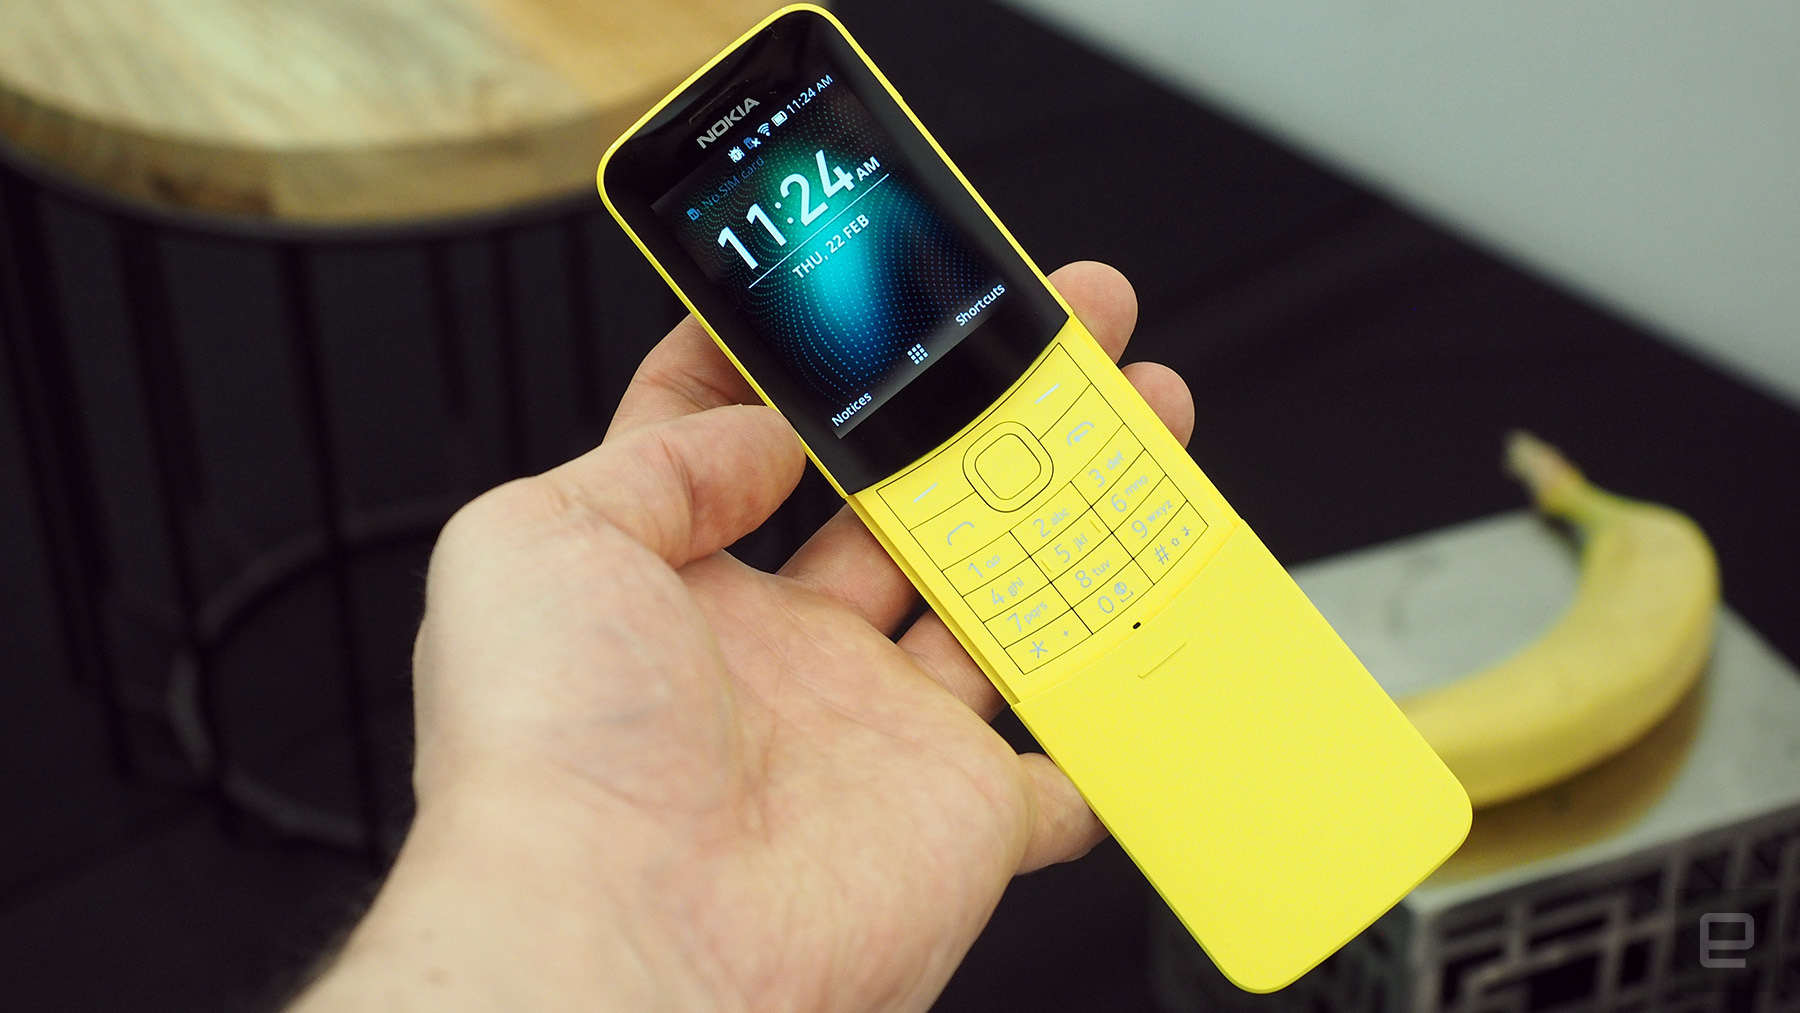 Huyền thoại “quả chuối” Nokia 8110 trở lại với 4G cùng chip Qualcomm